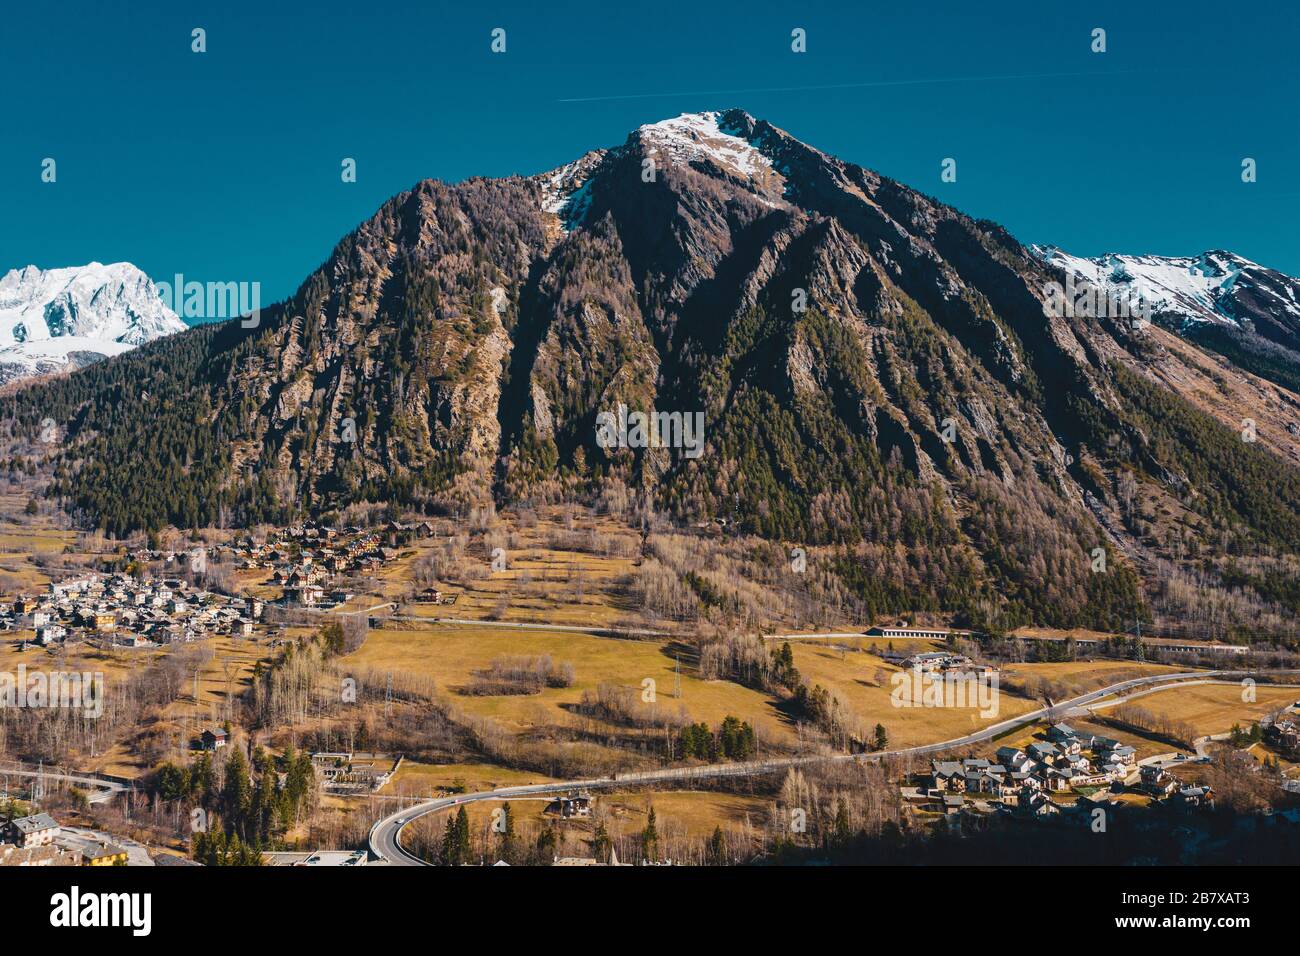 Il villaggio Palleusieux sotto una grande montagna, nel bacino Pre-Saint-Didier, Valle d'Aosta al tempo dell'epidemia del virus corona, nel nord Italia Foto Stock